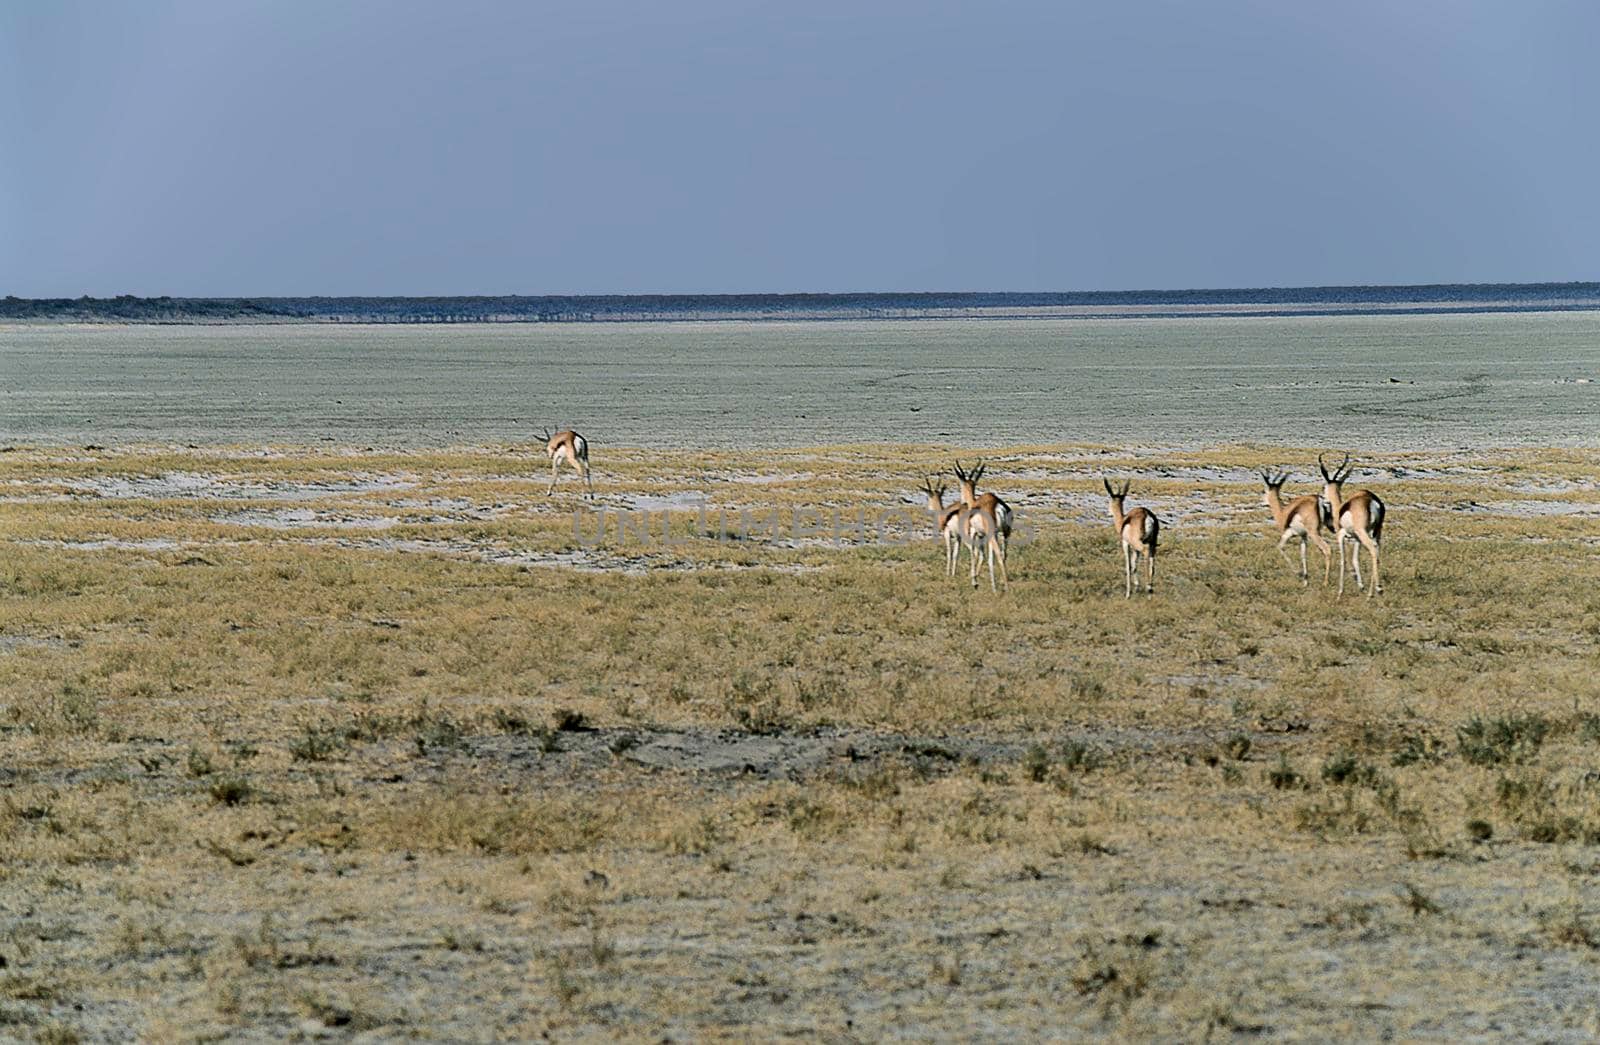 A group of Springboks (Antidorcas marsupialis) near the pan in Etosha National Park, Namibia.